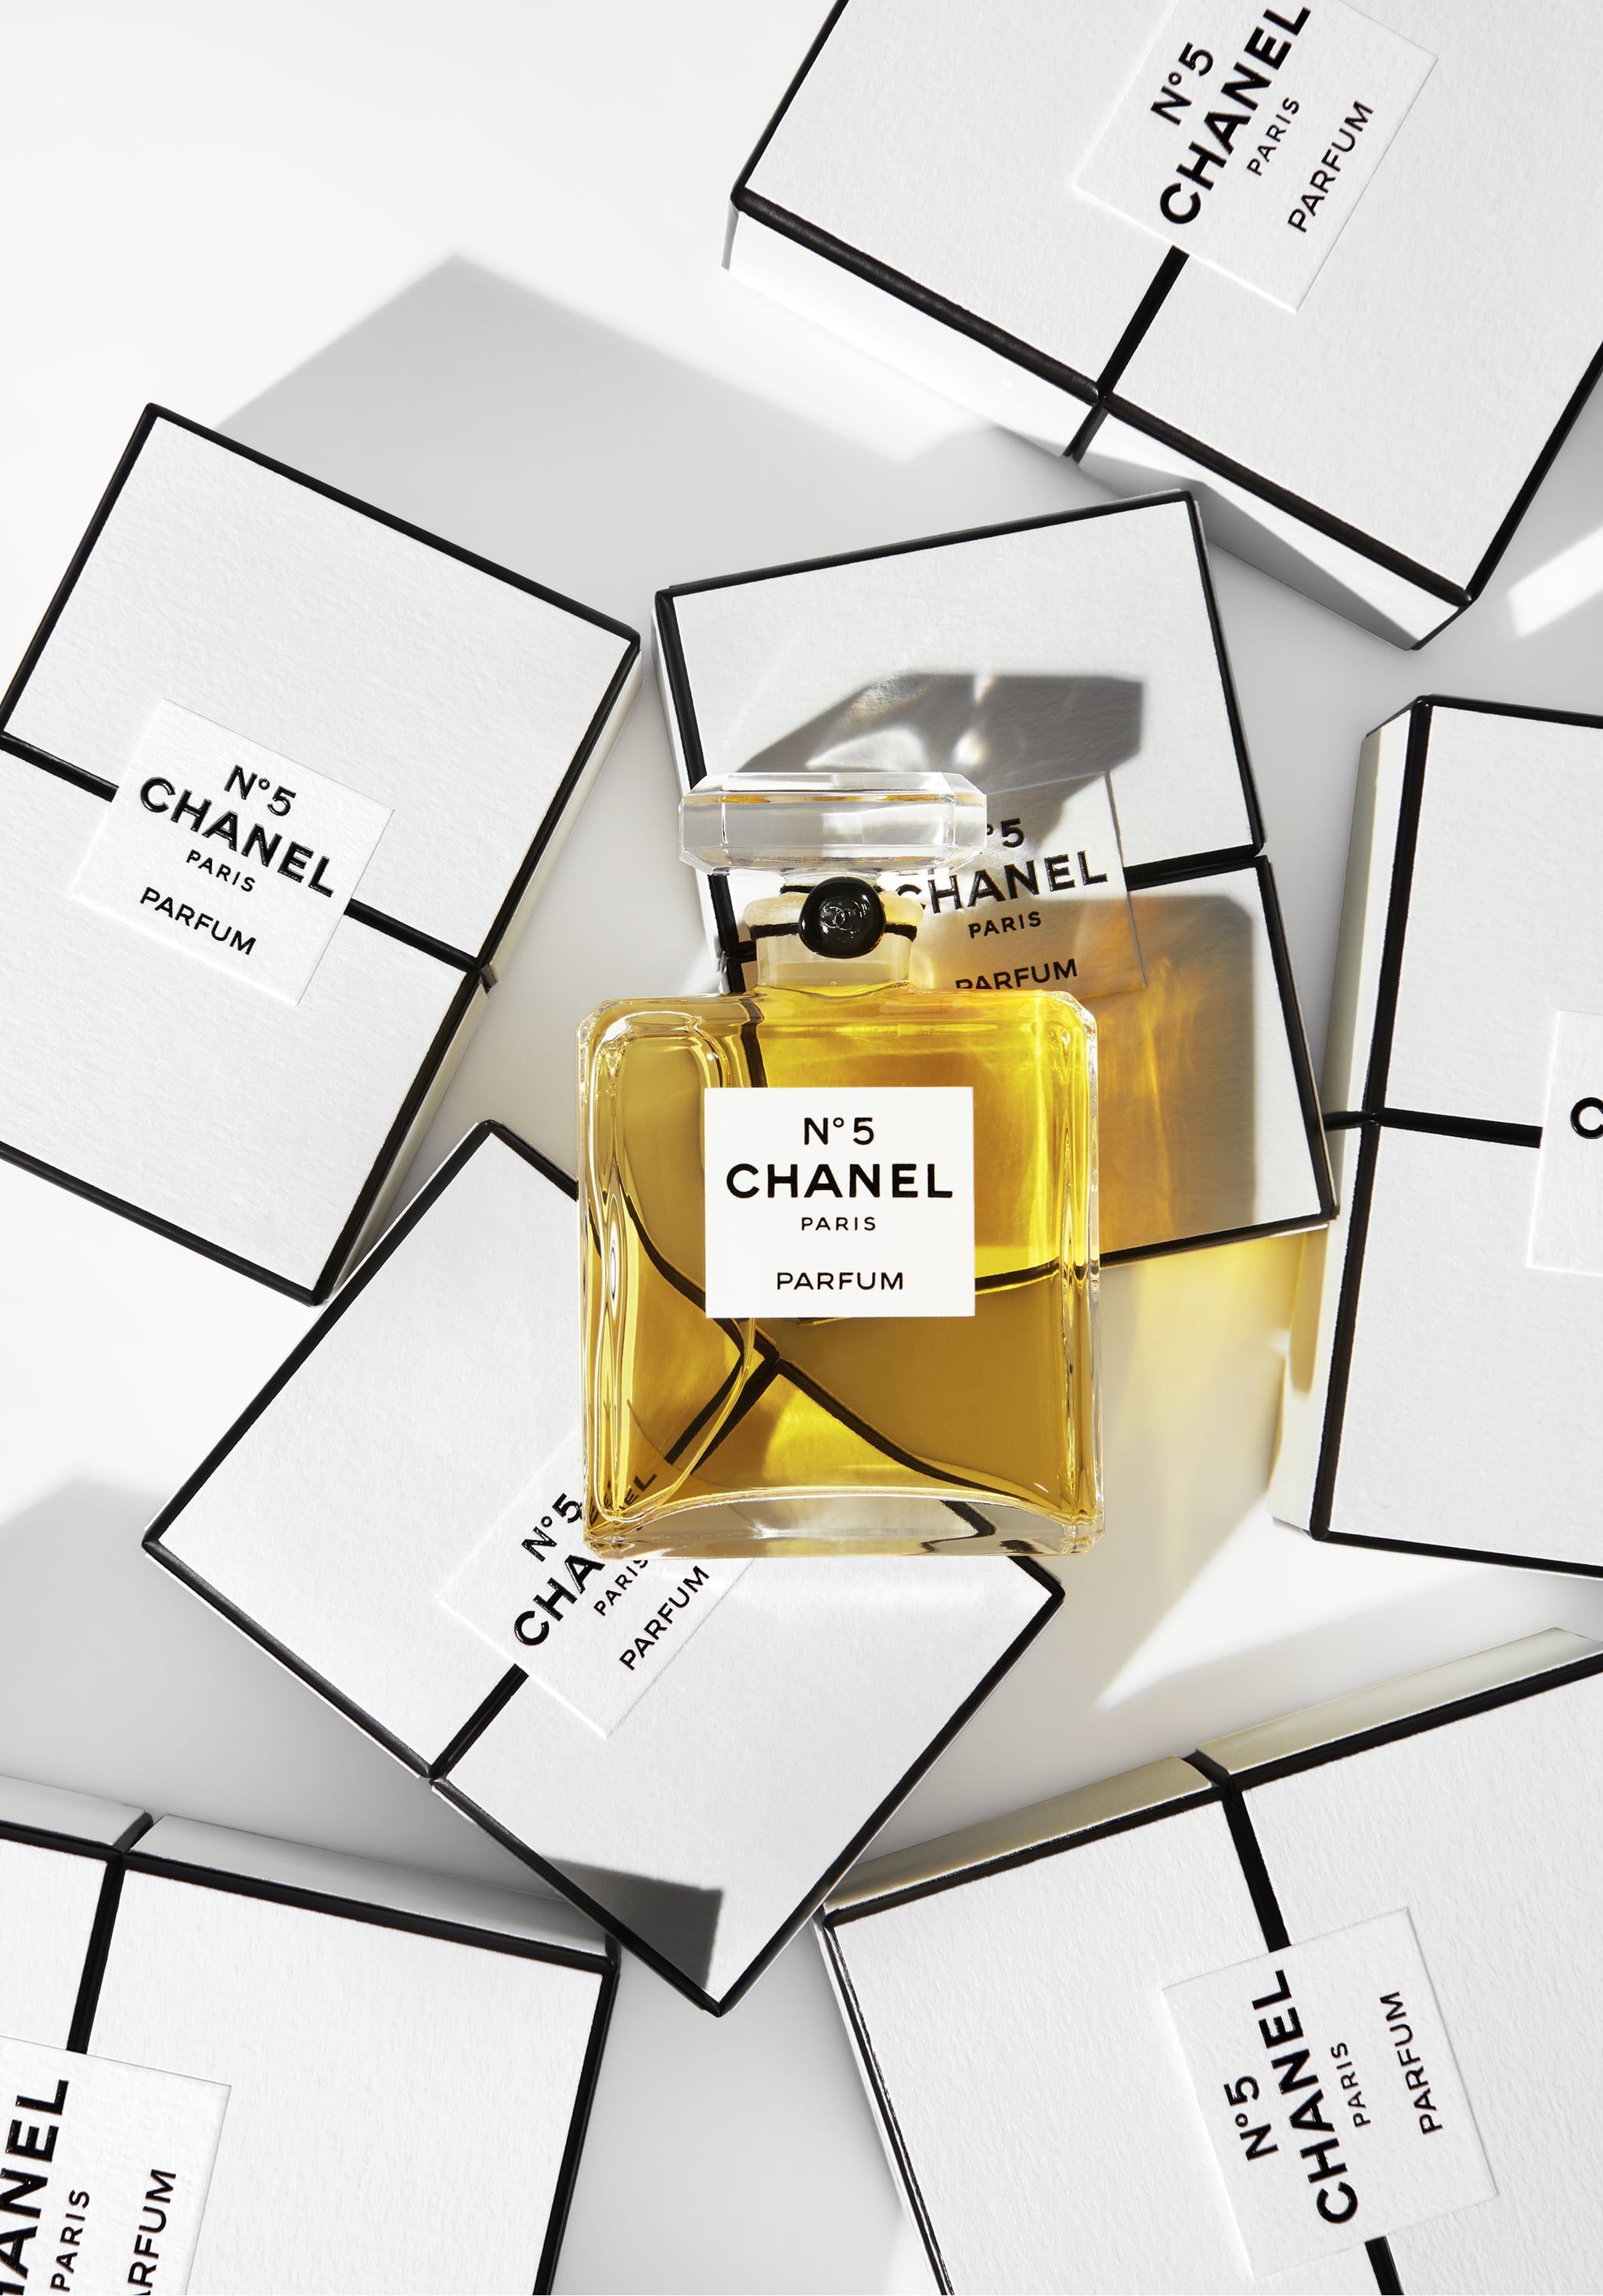 Les Eaux de Chanel Paris-Paris Is Chanel's Parisian Chic Scent